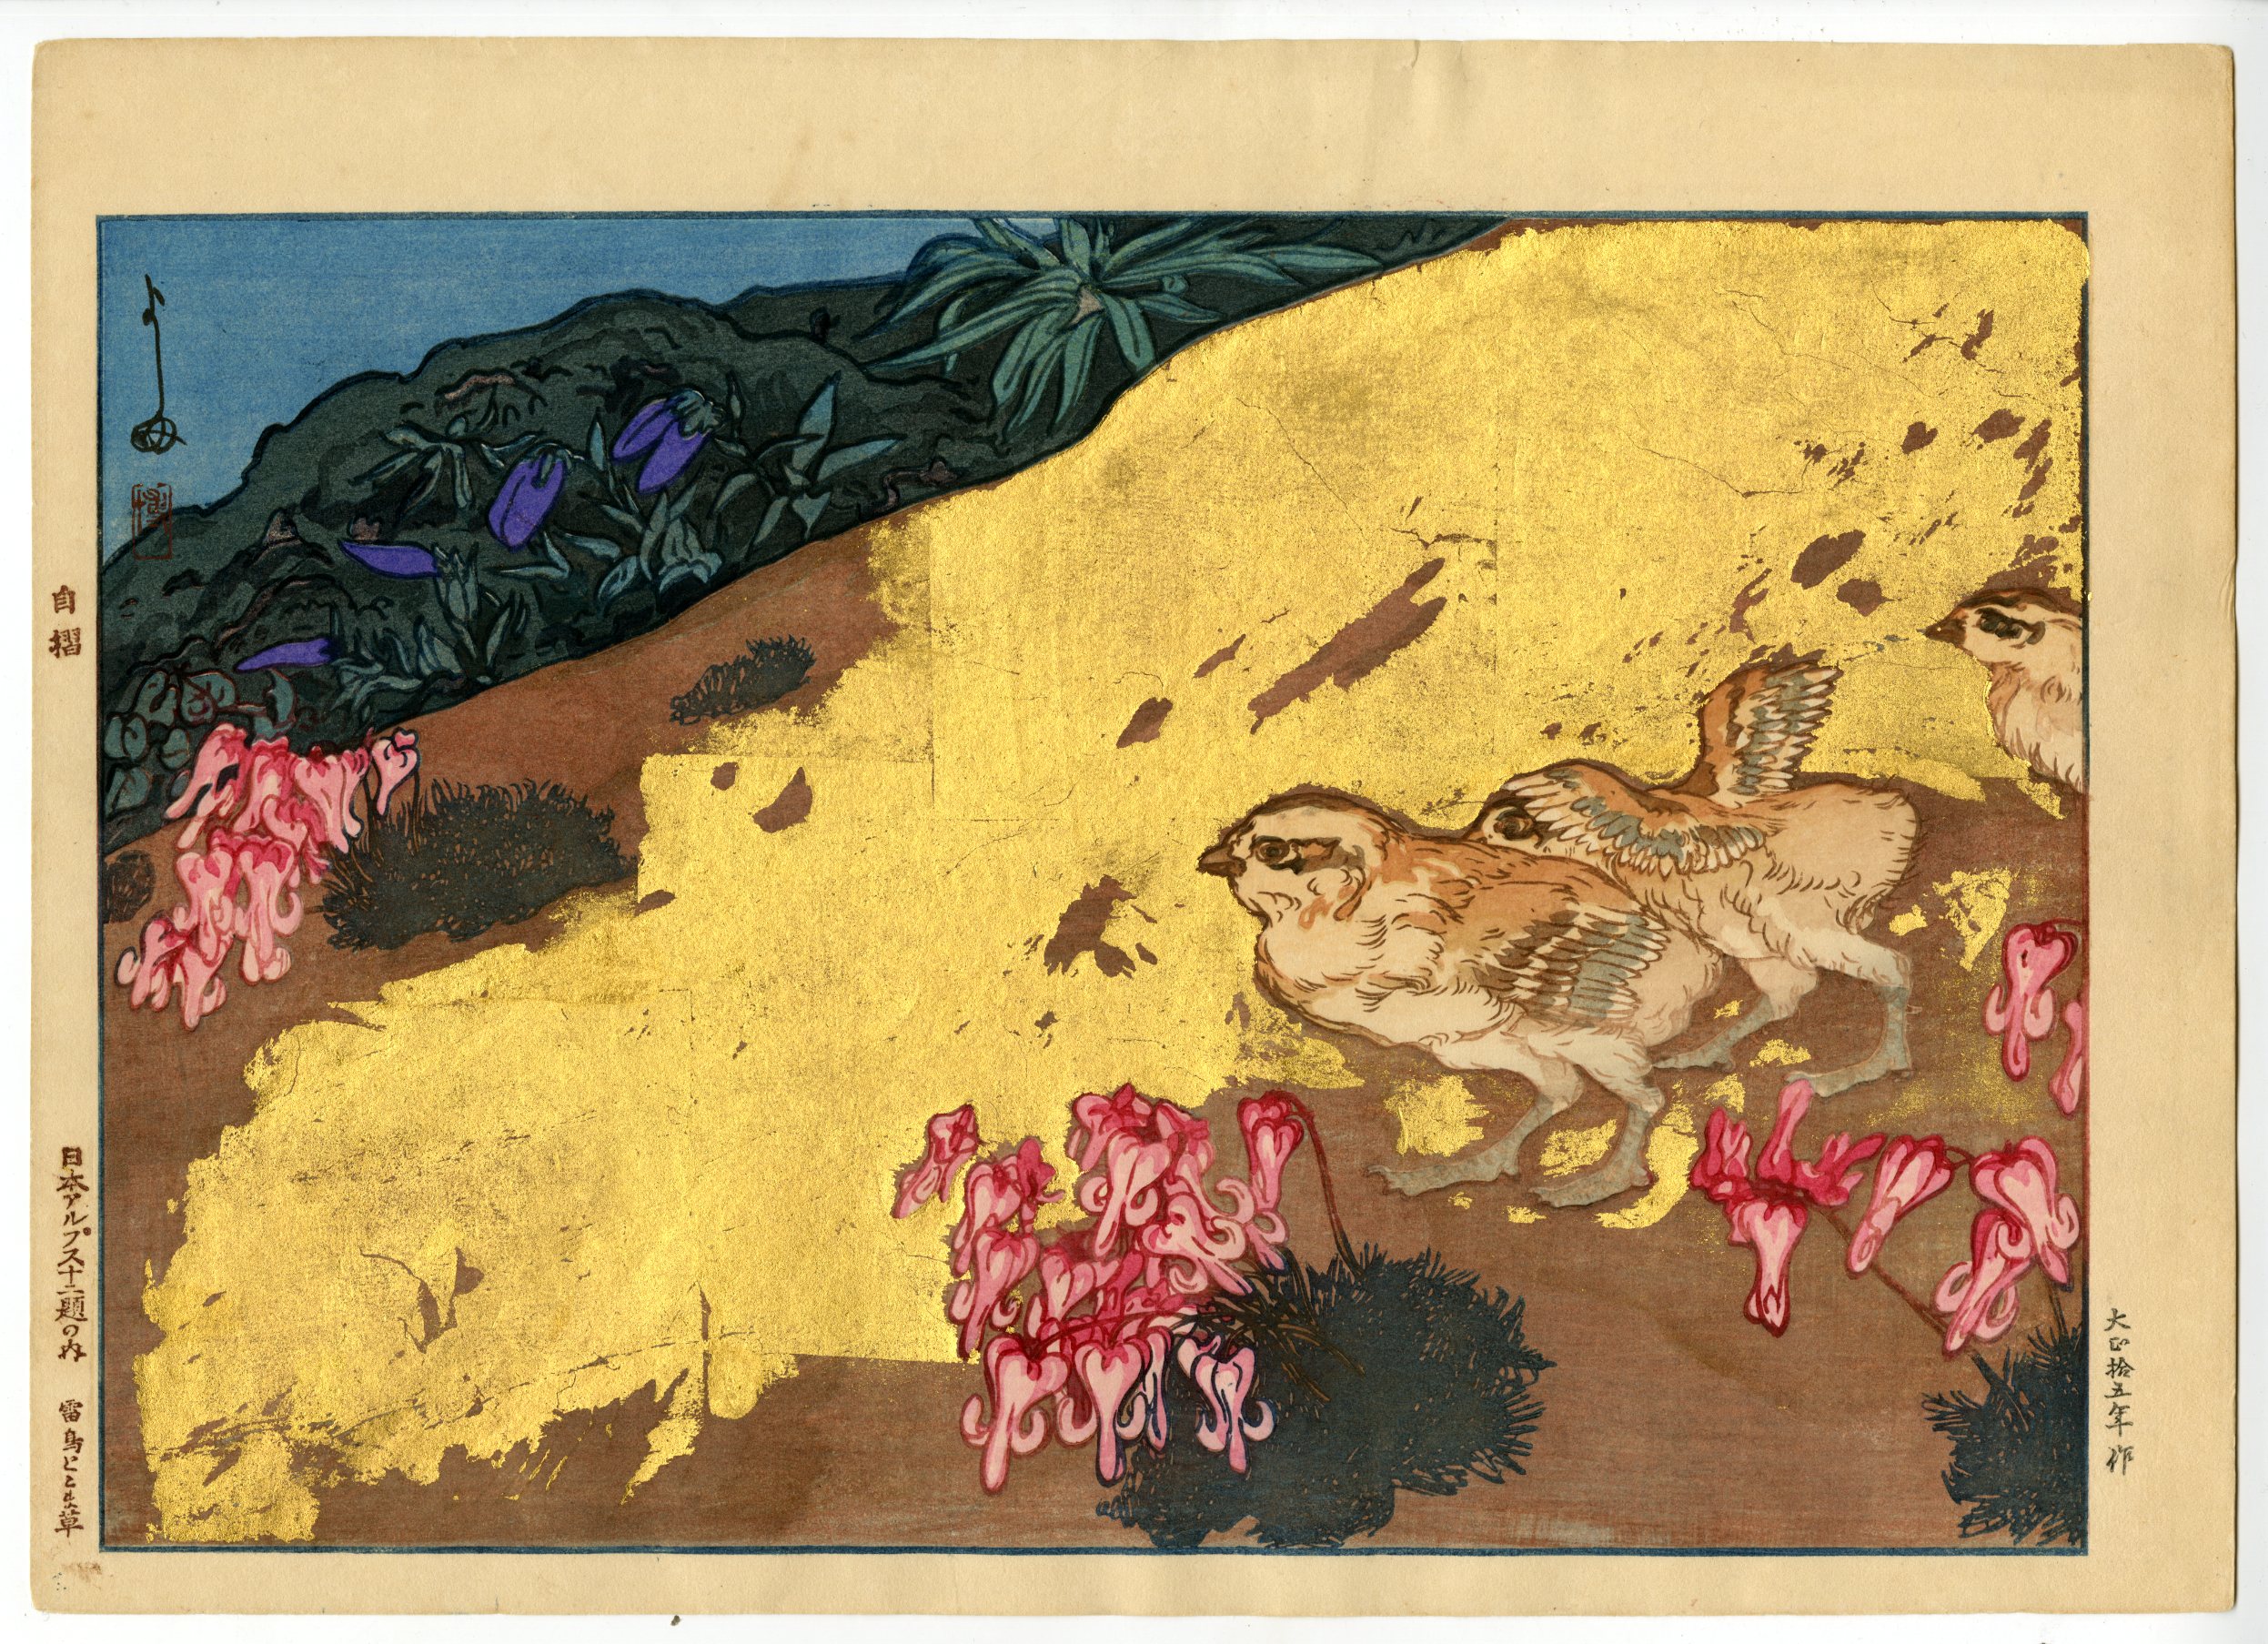 吉田博(よしだひろし) - 日本アルプス十二題 雷鳥とこま草 - 新版画 